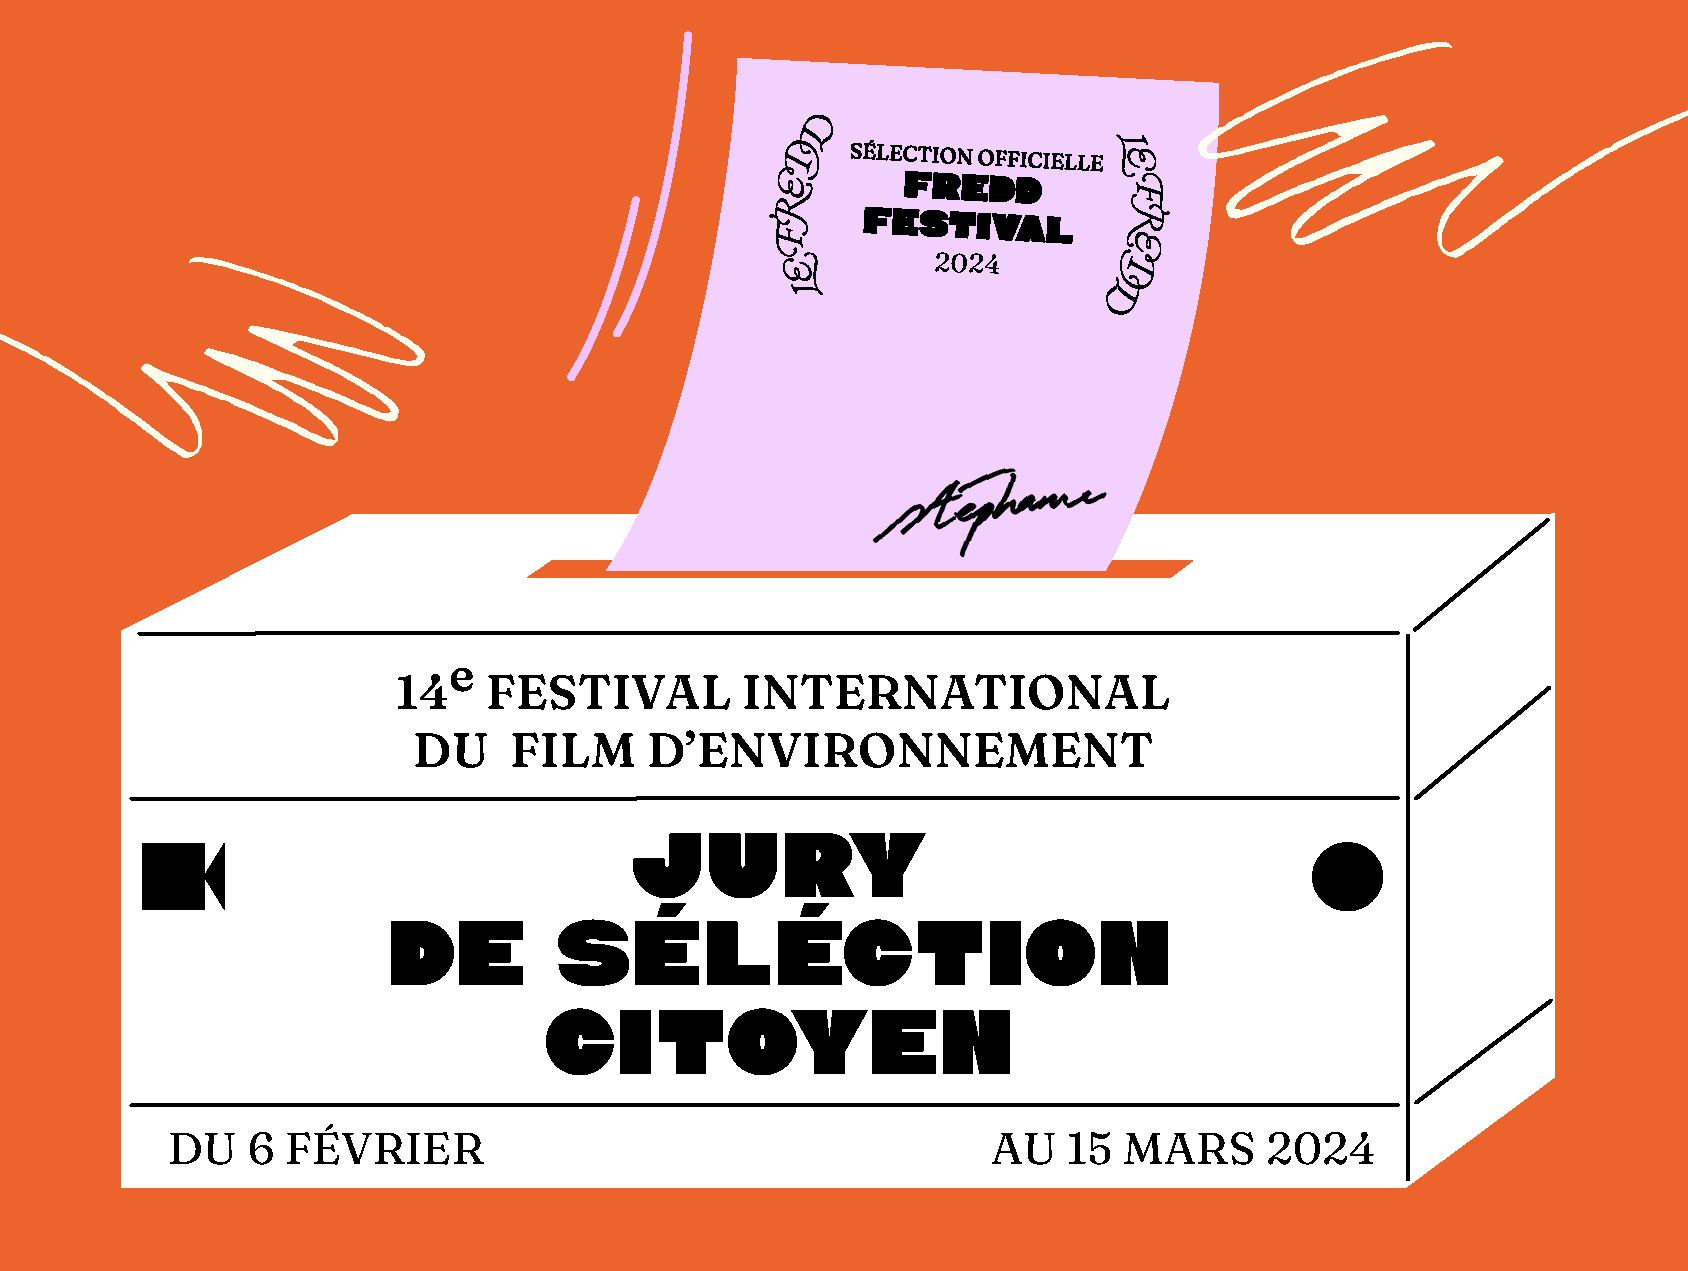 Haute-Garonne - Jury de sélection citoyen : 3 projections en ligne et gratuites pour les habitants d'Occitanie